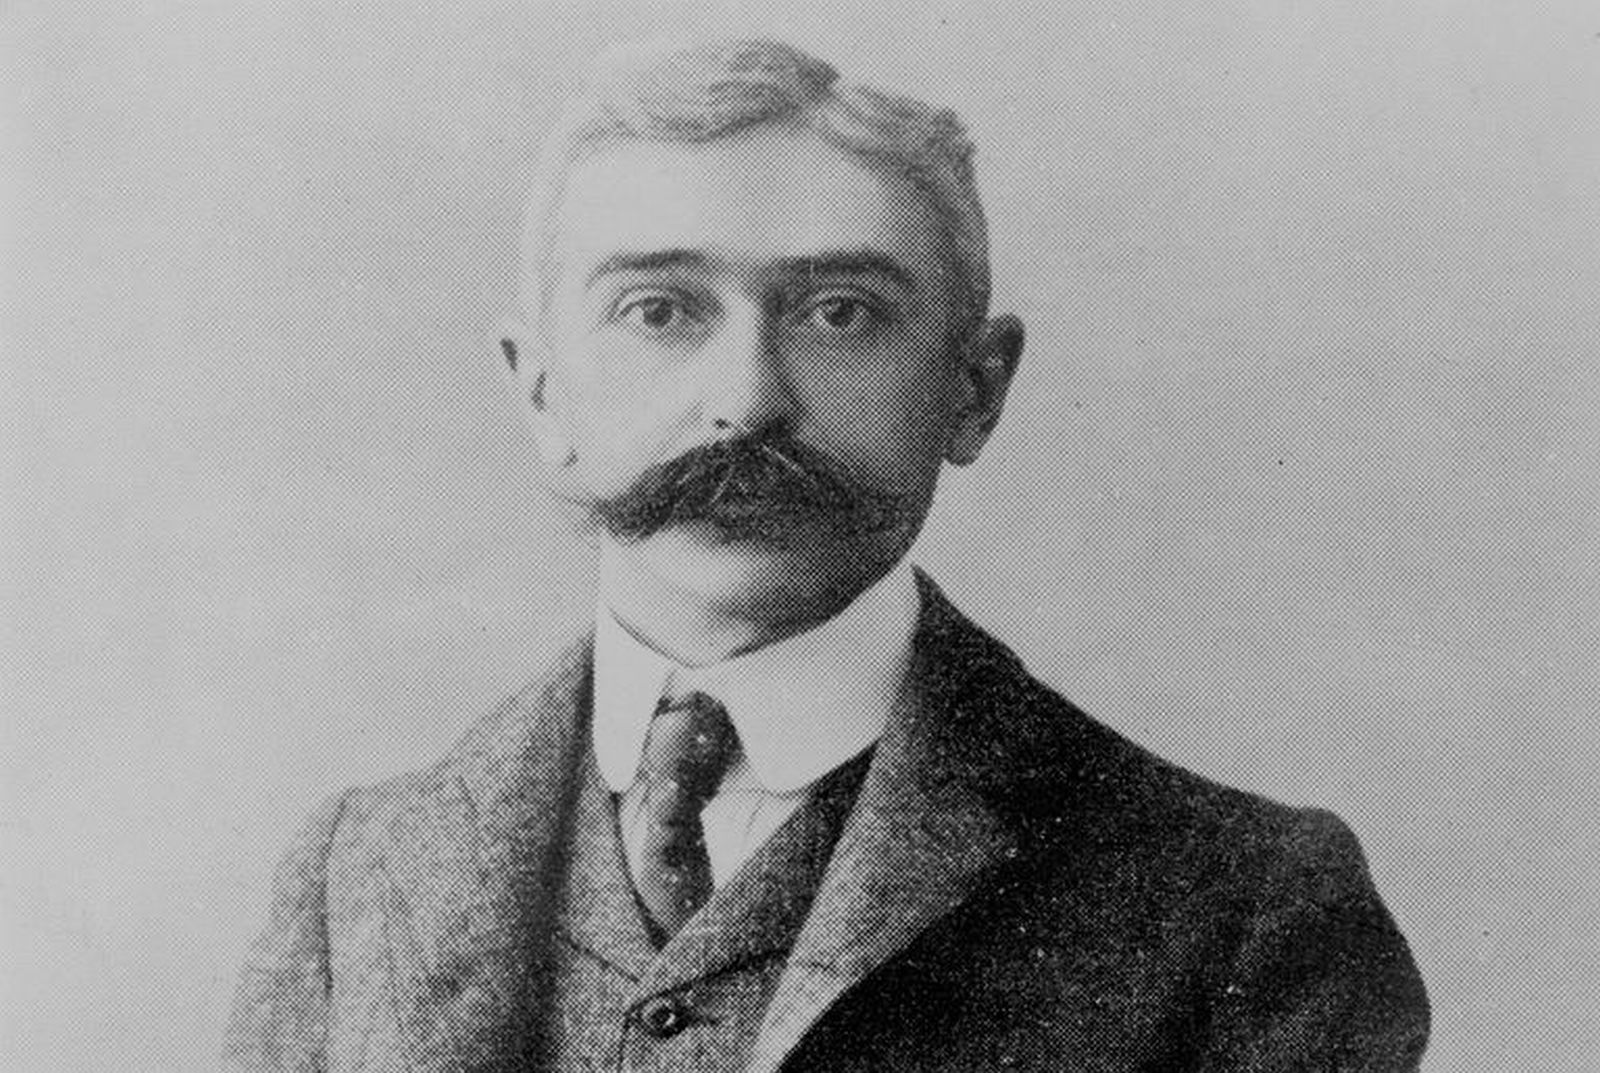 Pierre de Coubertin měl představu, že hry budou symbolem rovnoprávnosti všech sportovců, tedy bez rasové, politické a náboženské diskriminace. Tato myšlenka byla ovšem narušena hned několika teroristickými činy.